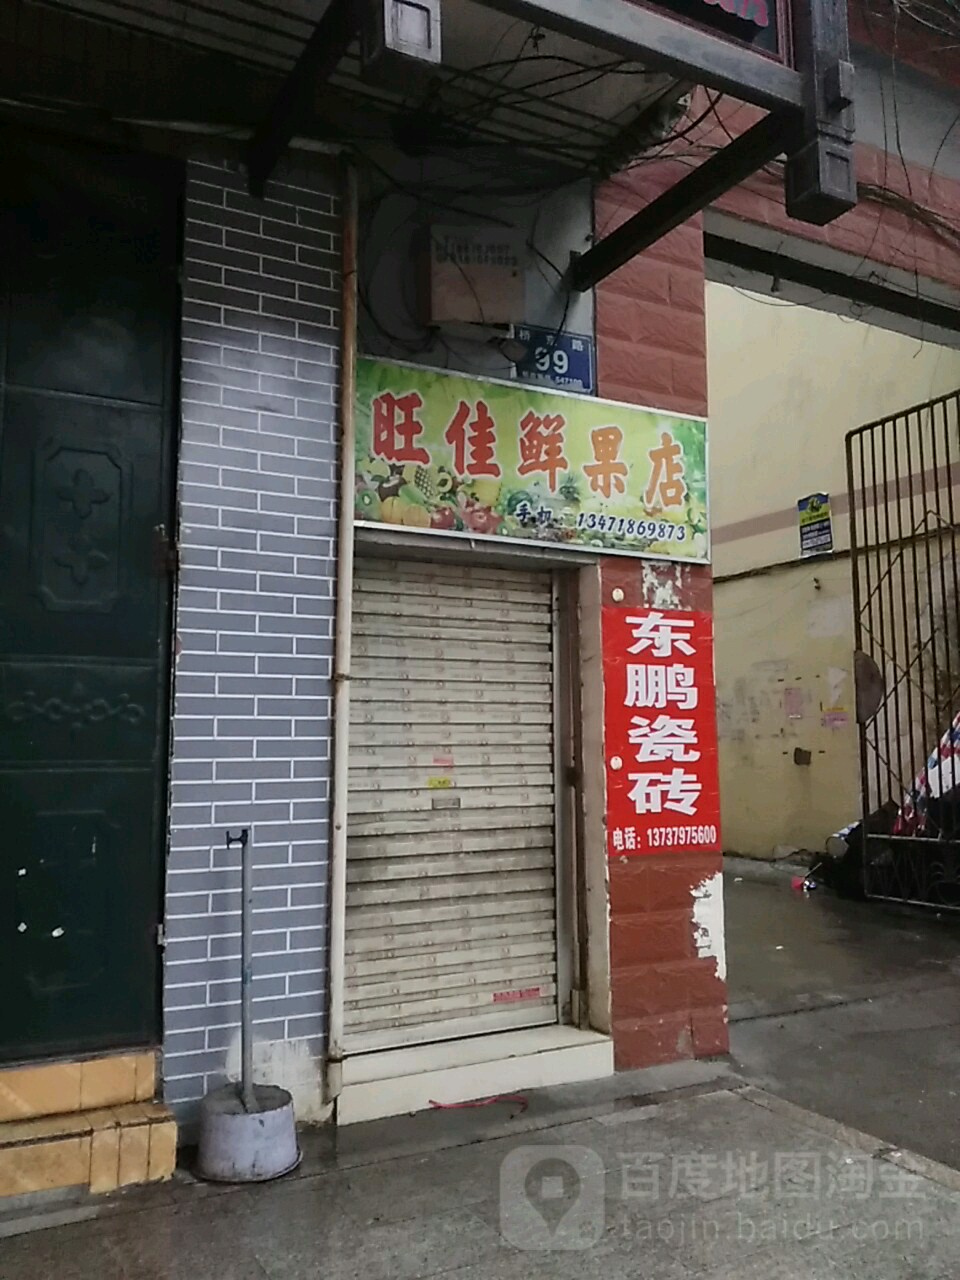 旺佳鮮果店